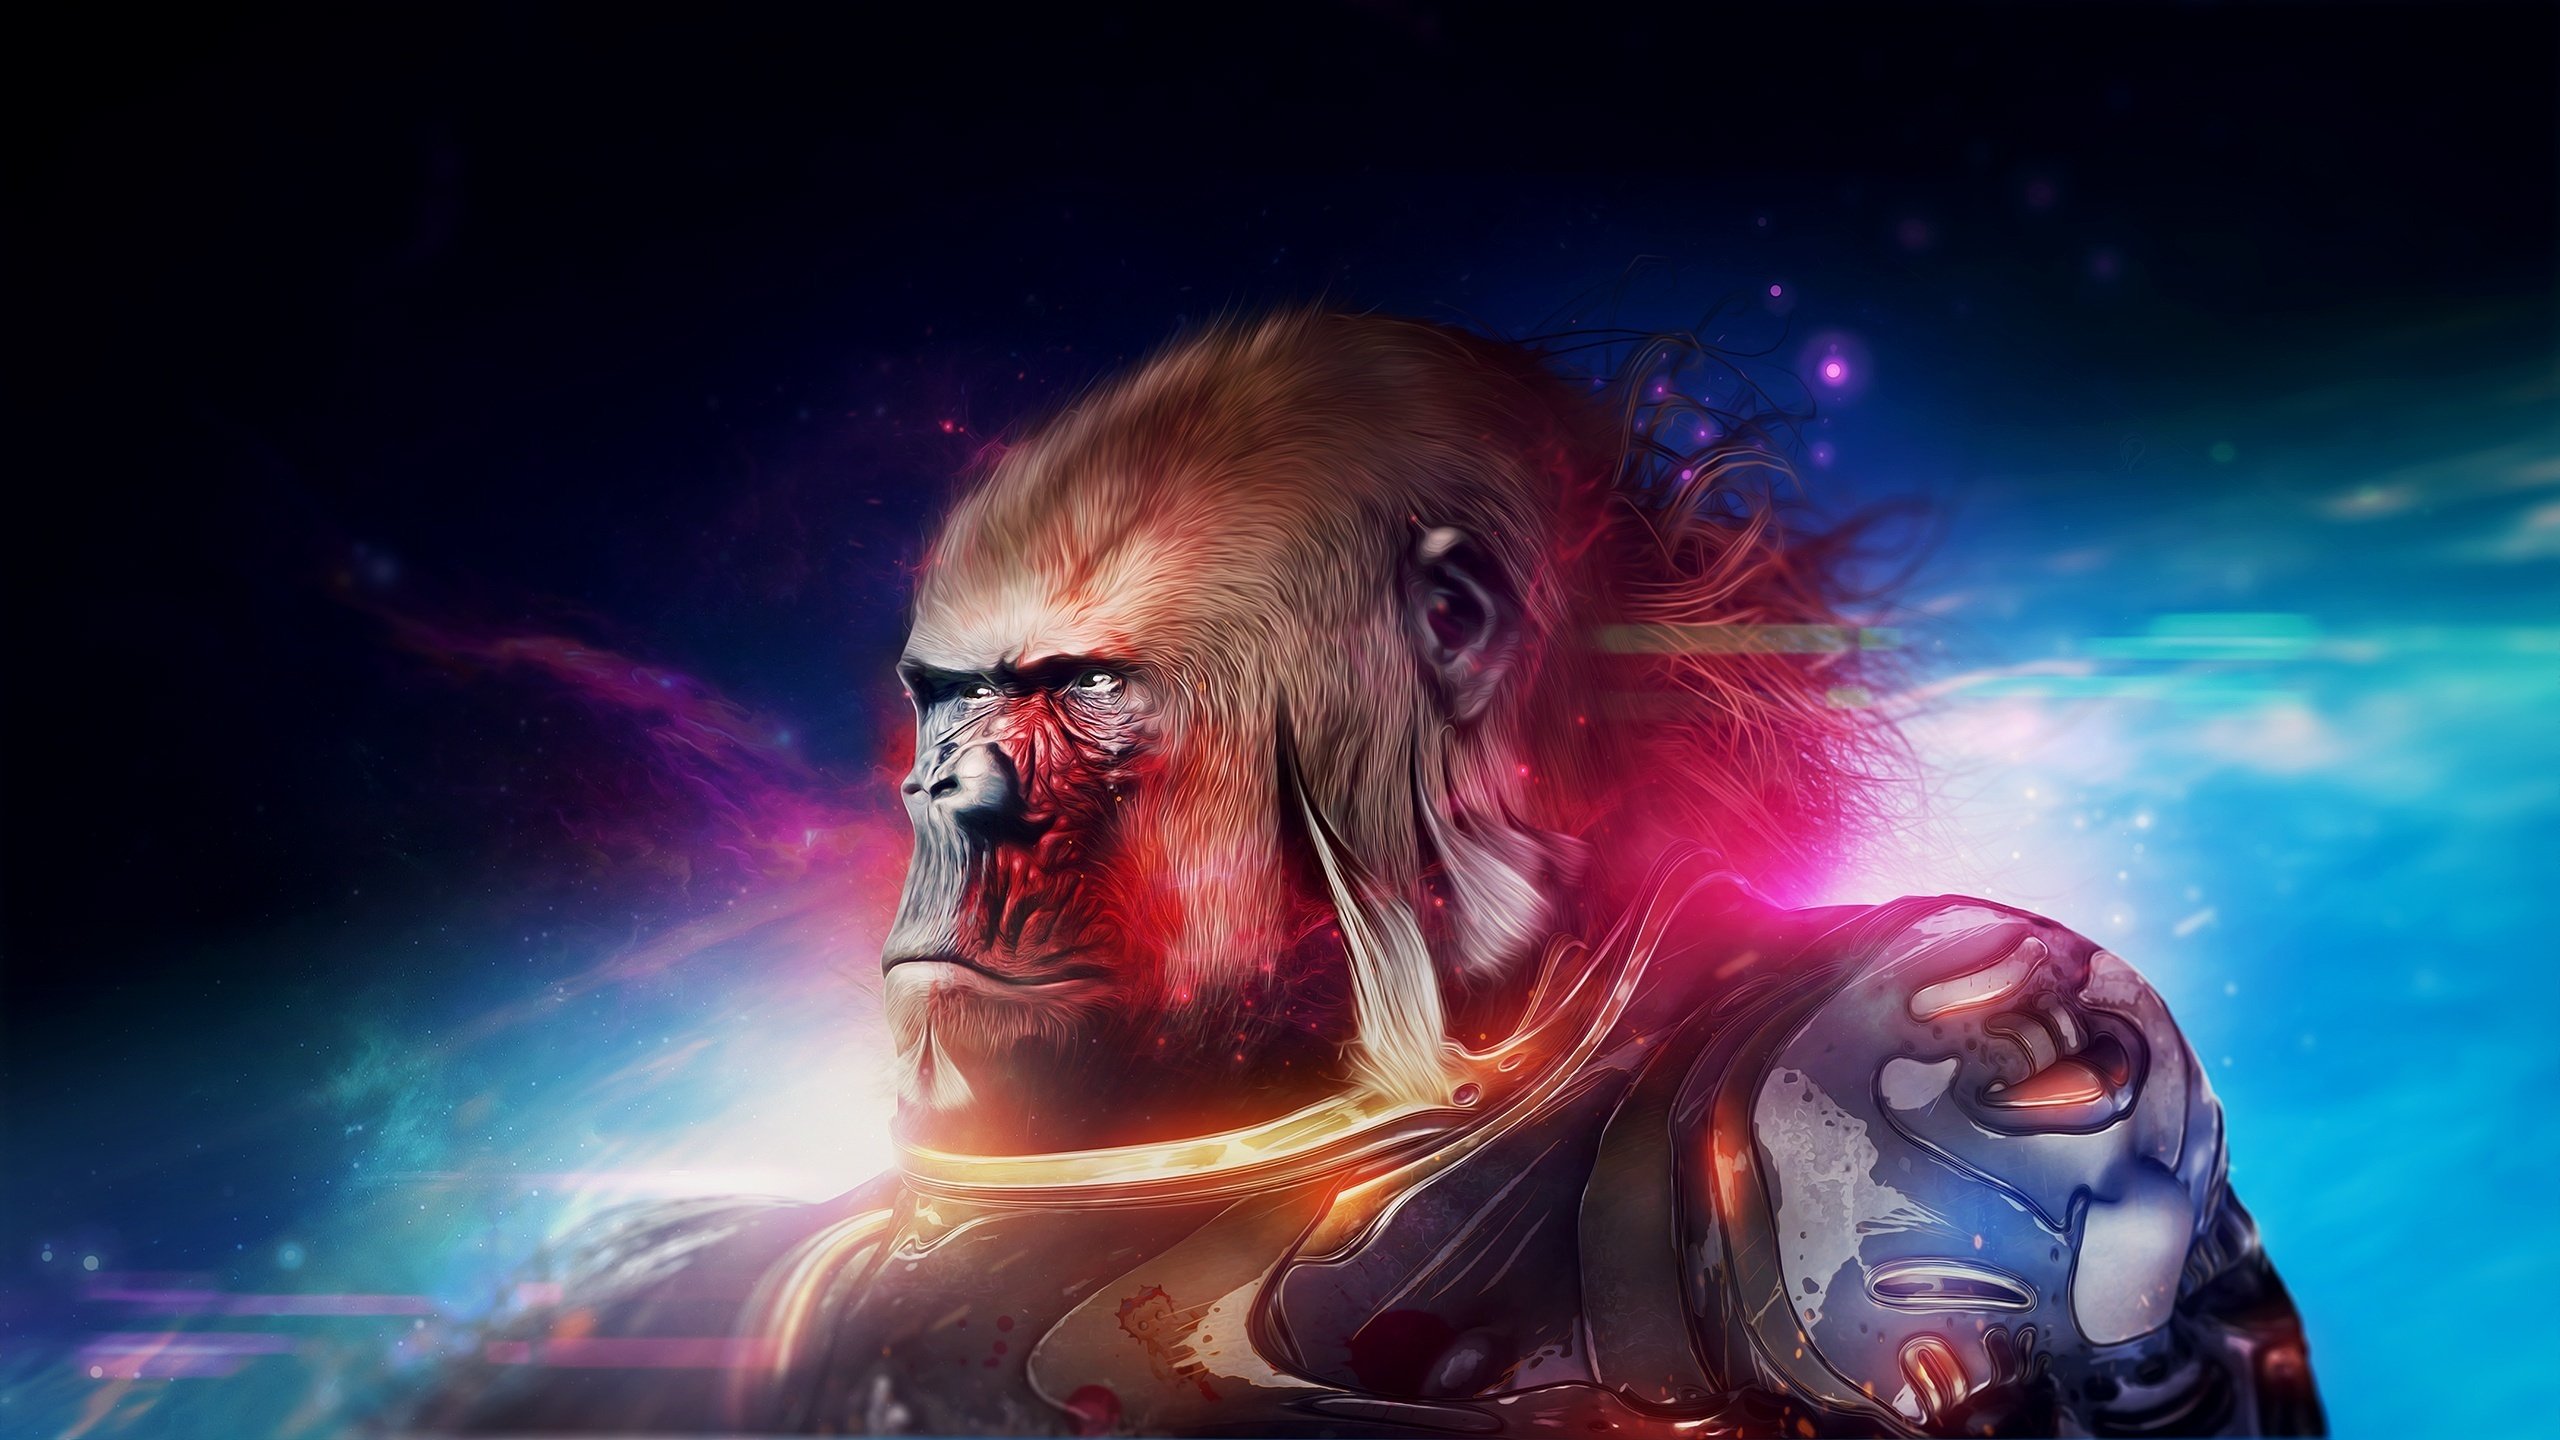 monkey, Warrior, Fantasy, Planet, Apesw, Movie, Film, Gorilla Wallpaper